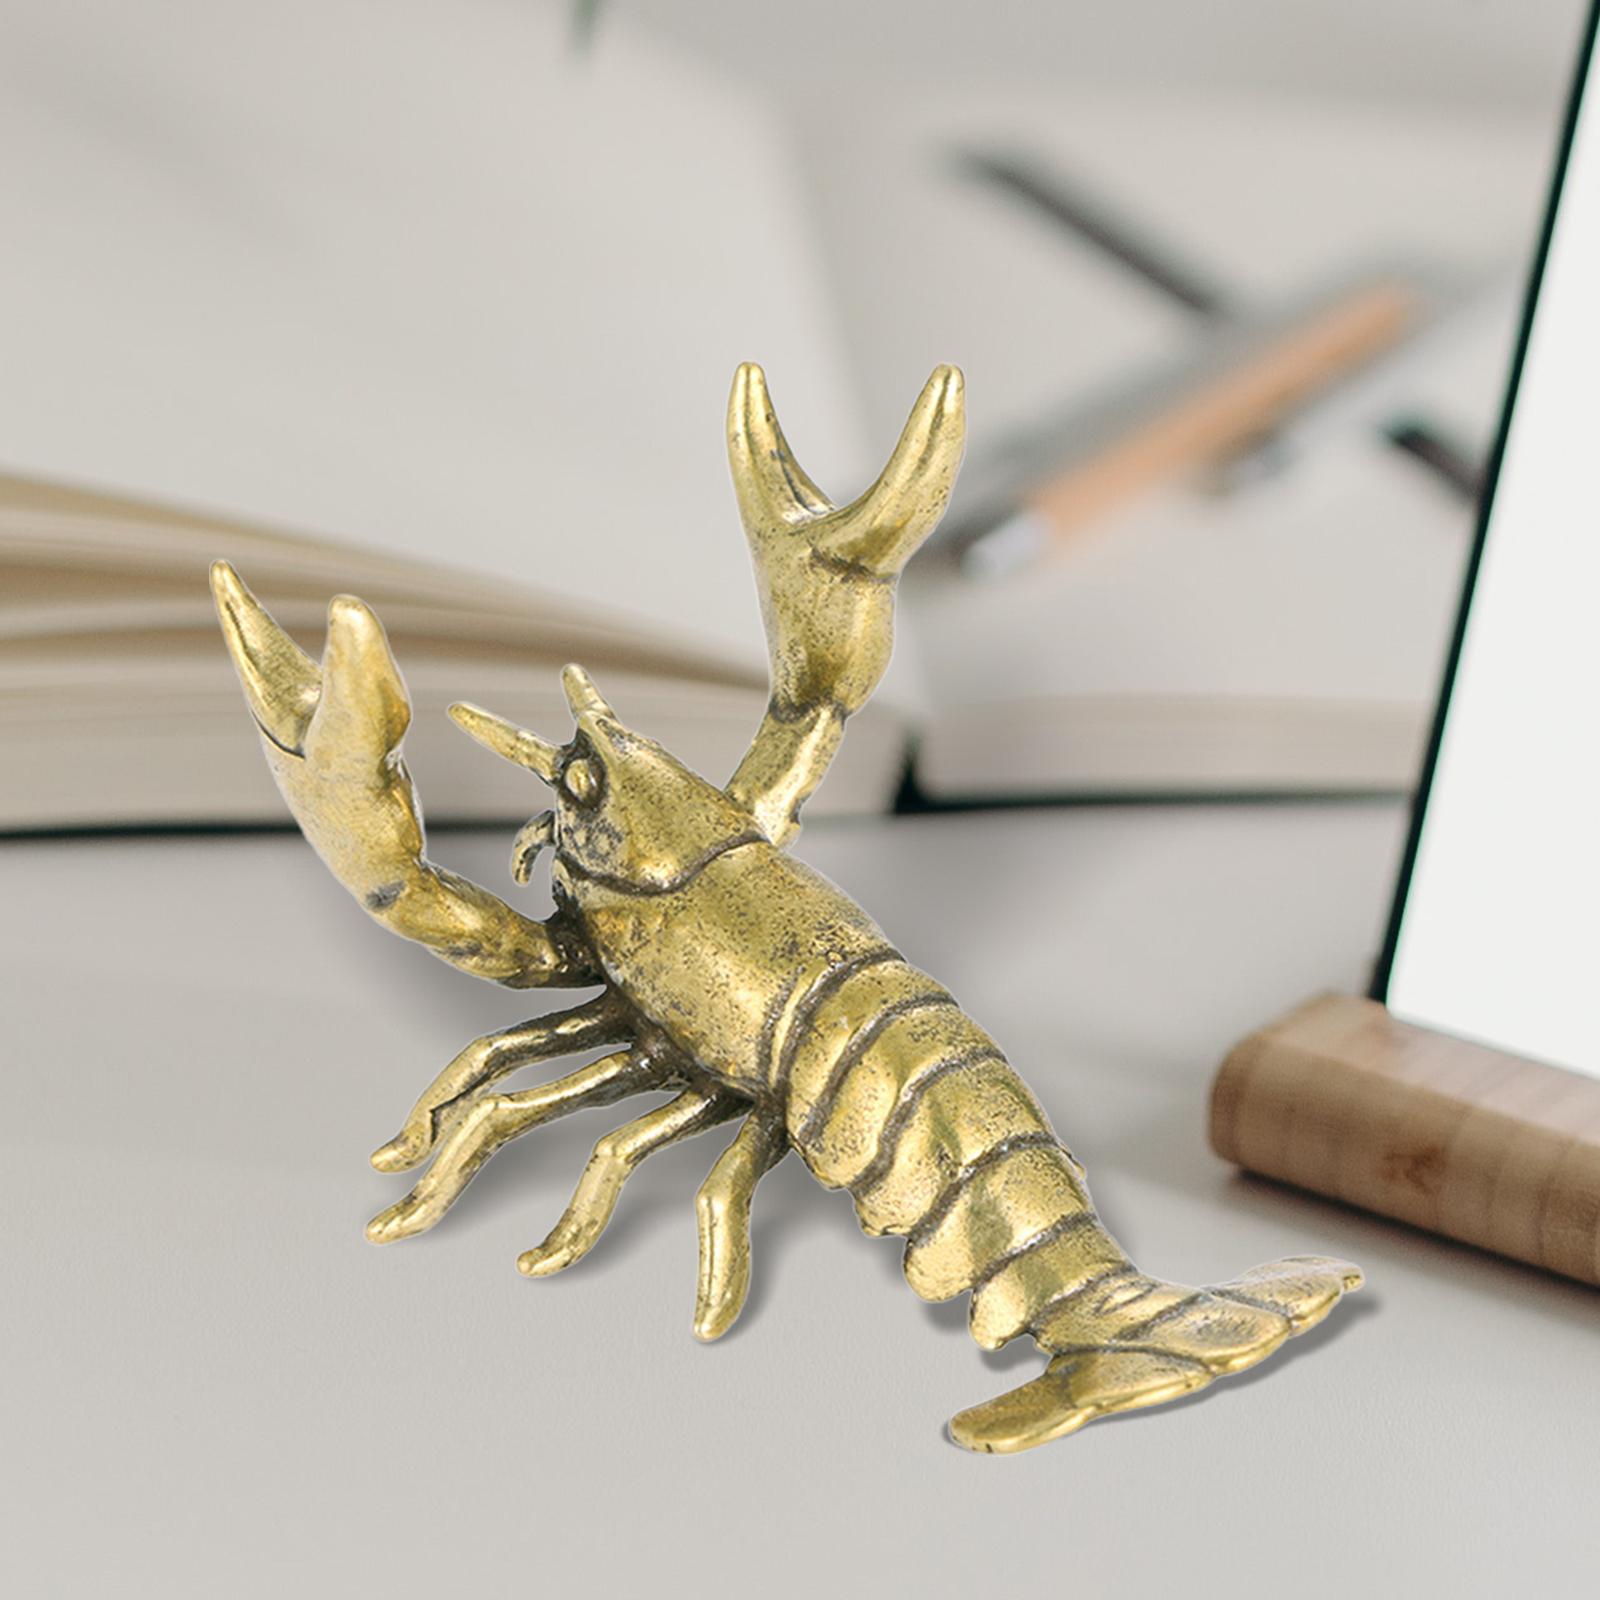 Novelty Crayfish Statue Pen Holder Lobster Figurine Decor Crafts for Desktop